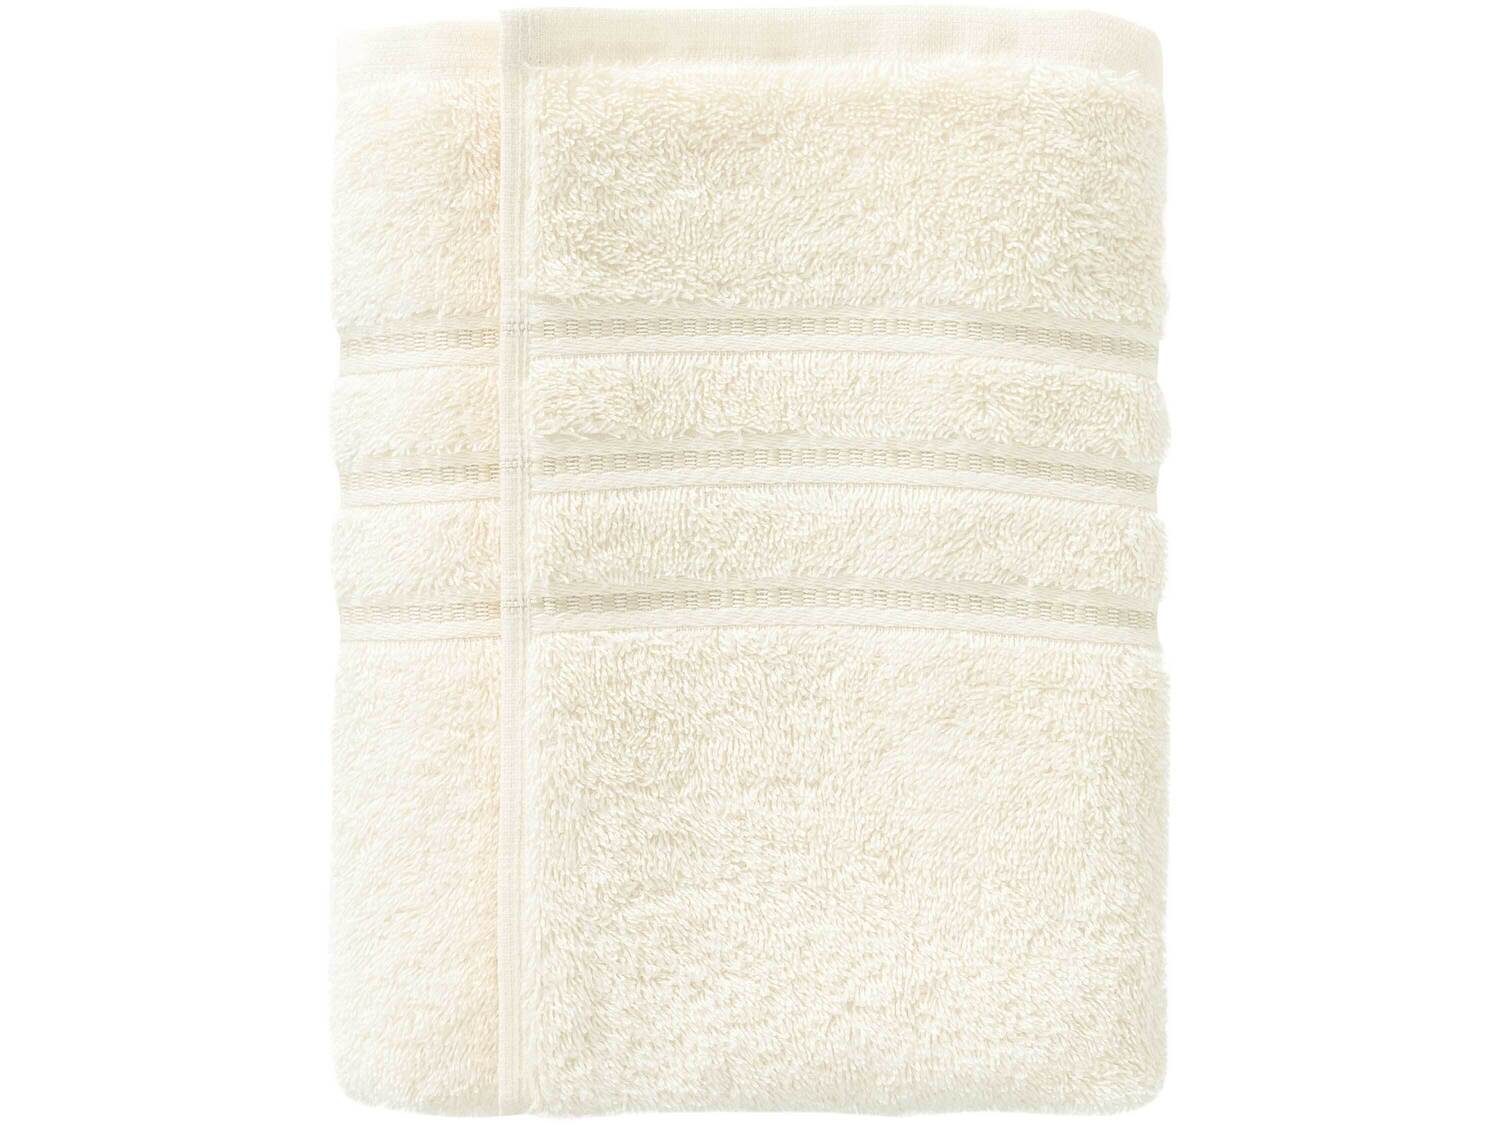 Ręcznik frotté 50 x 100 cm Miomare, cena 11,99 PLN 
- ozdobna bordiura
- 500 g/m2
- ...